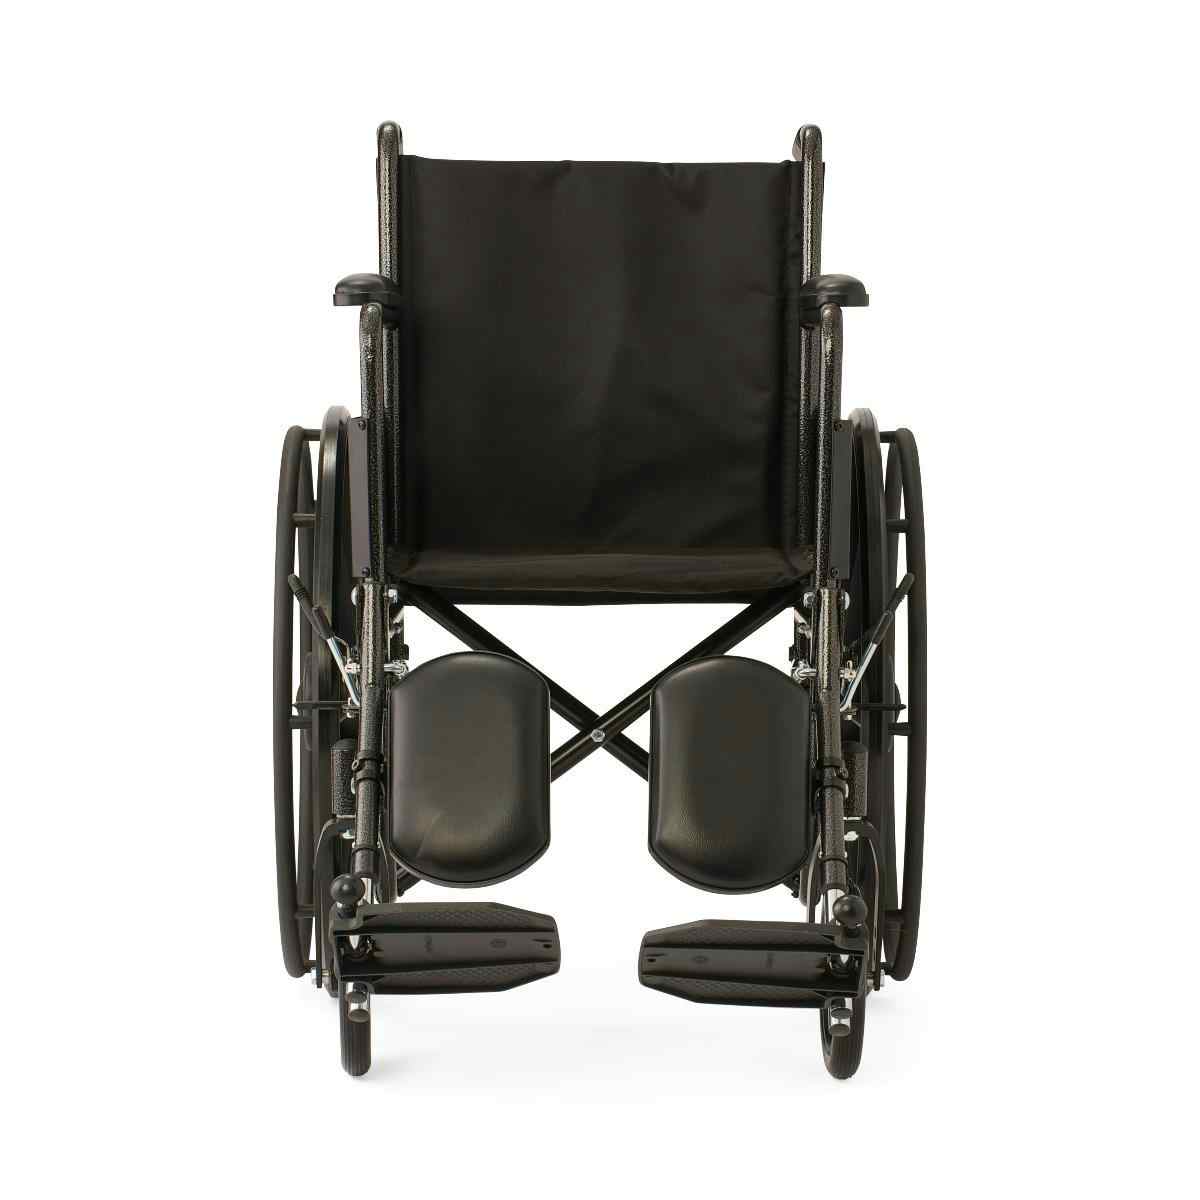 Medline K1 Wheelchair, Full-Length Permanent Arms, Elevating Leg Rests, 18", K1186N13E, 1 Each